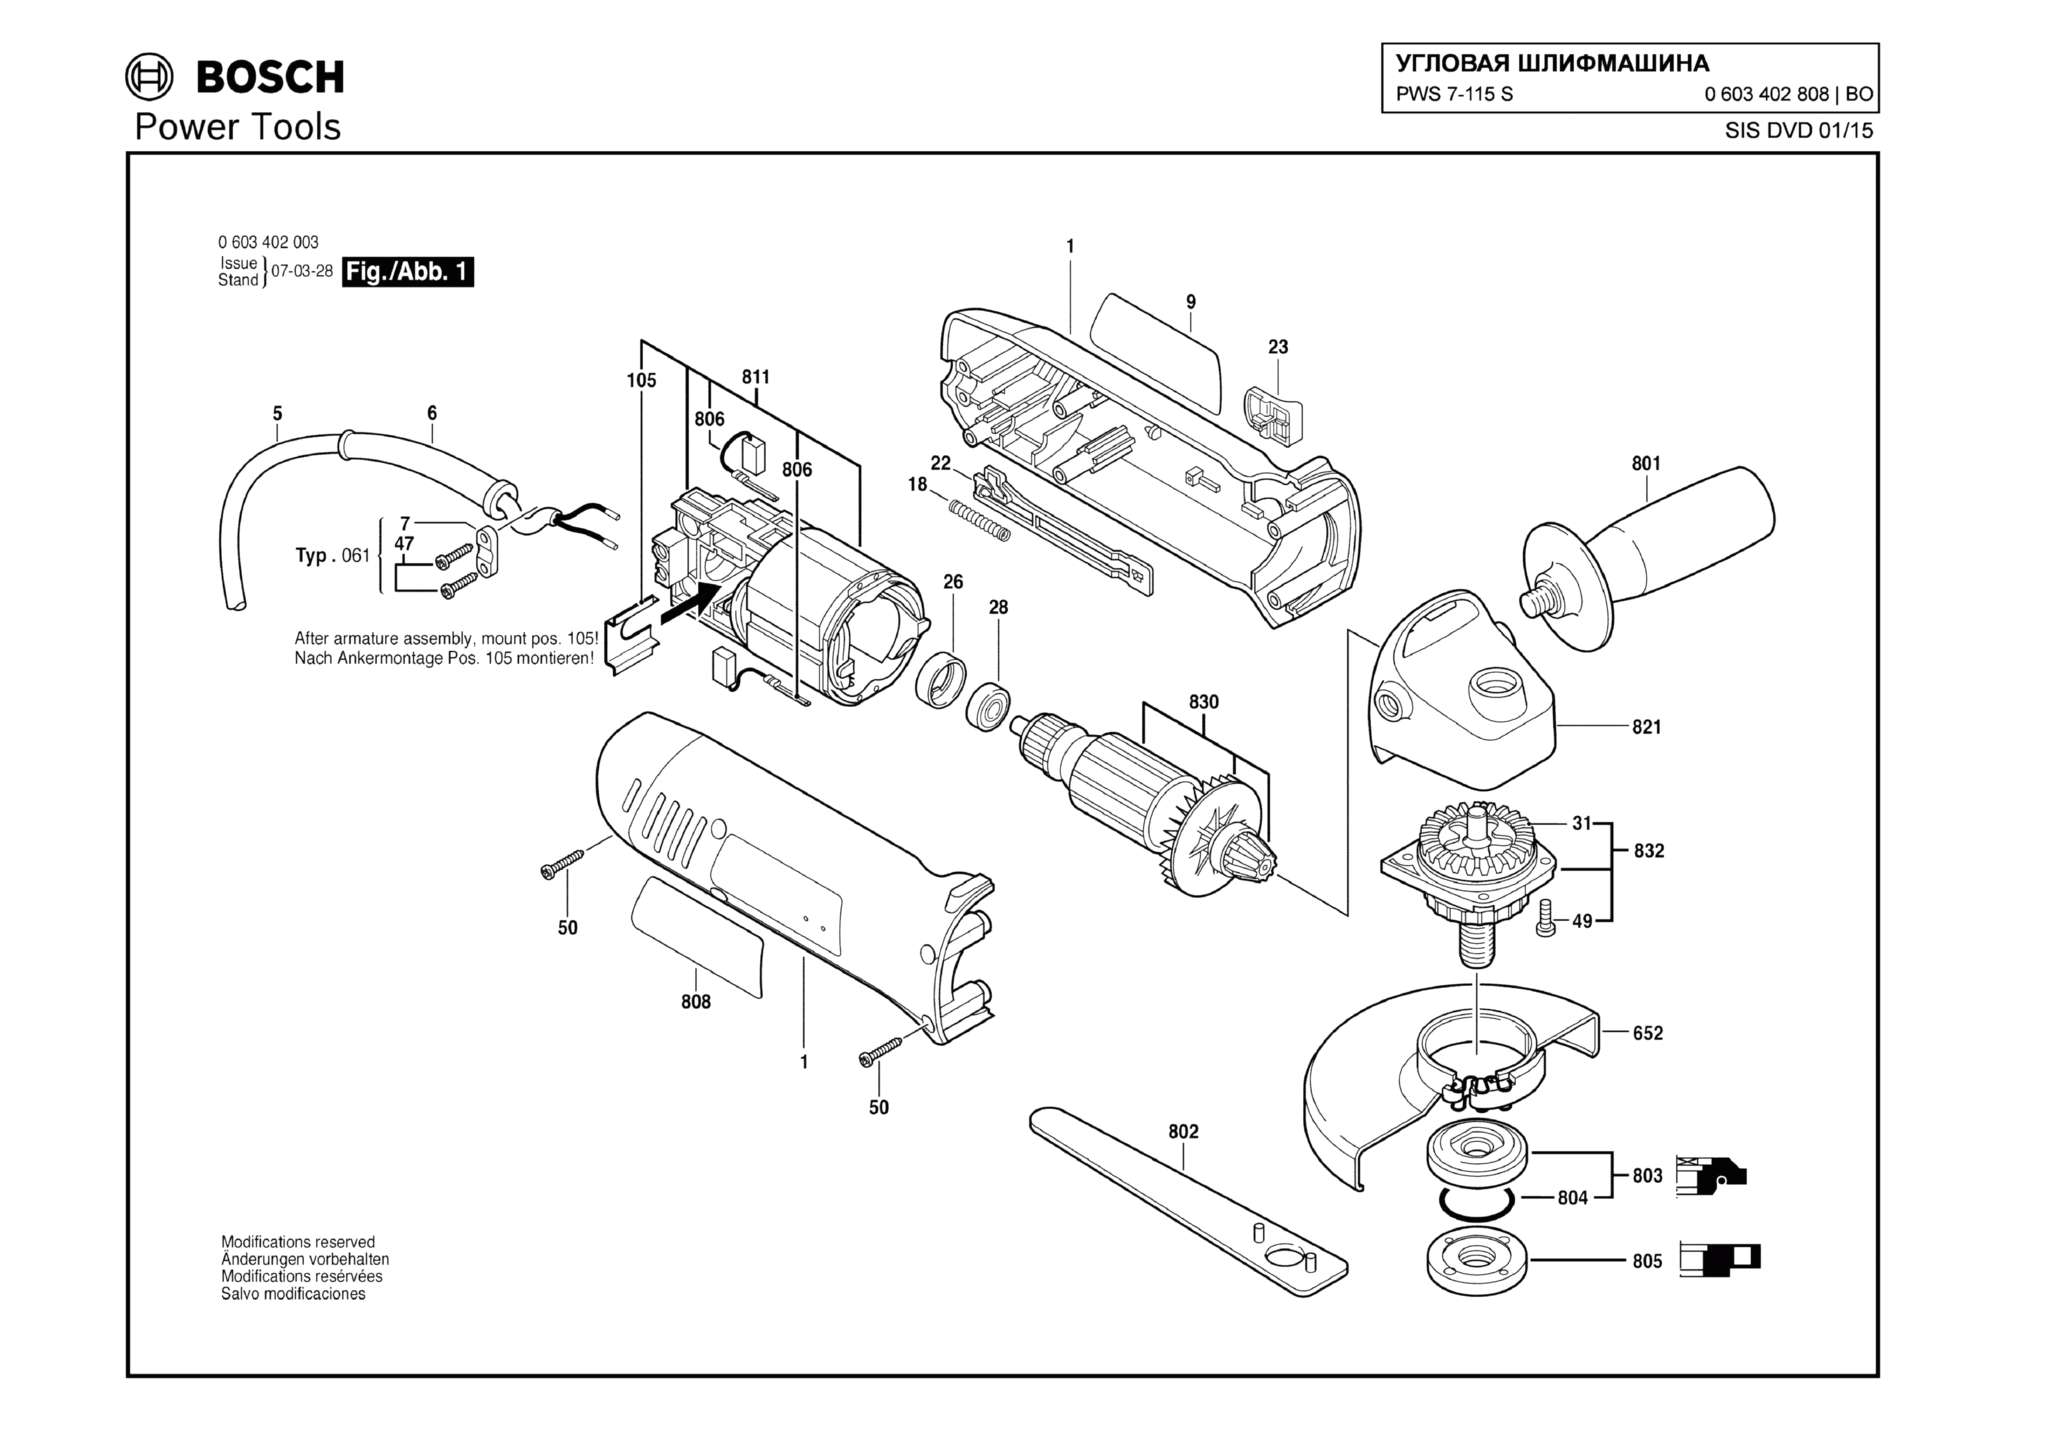 Запчасти, схема и деталировка Bosch PWS 7-115 S (ТИП 0603402808)